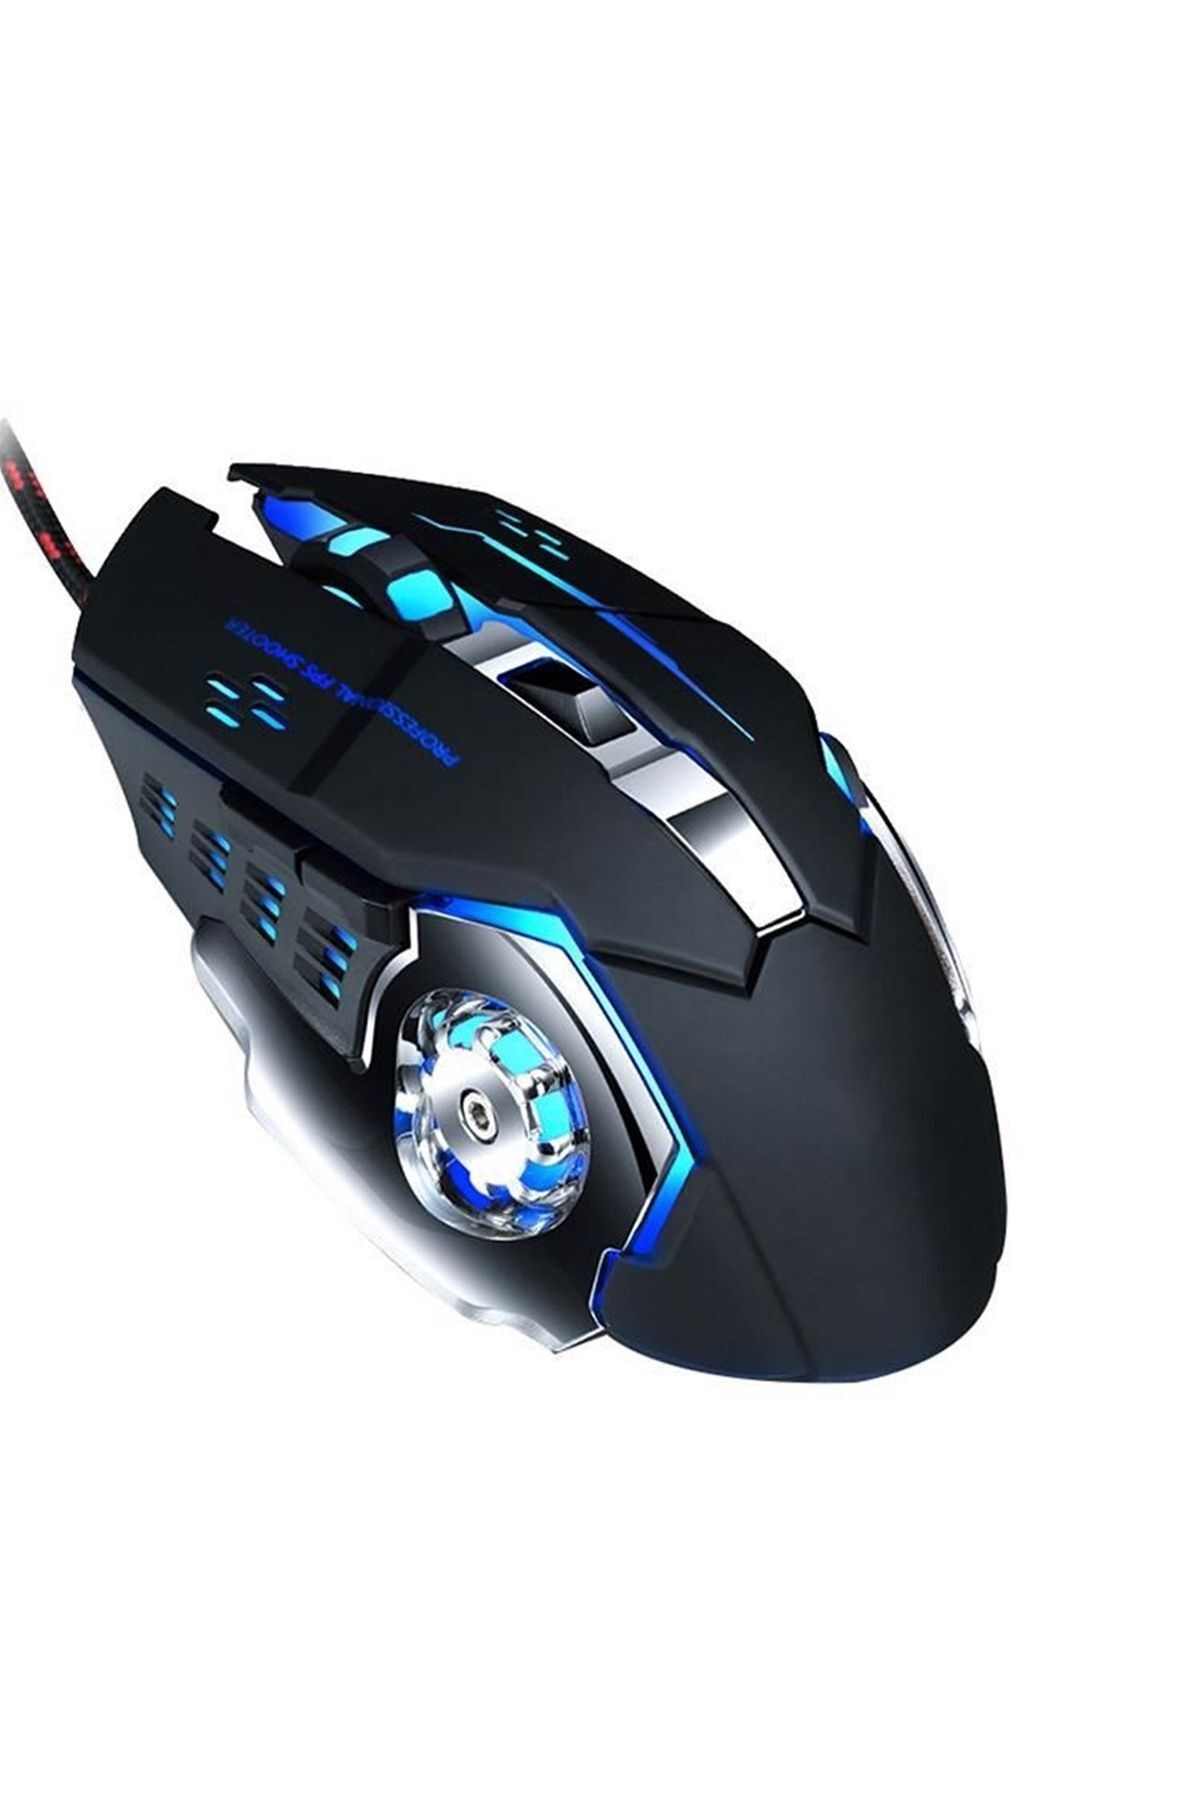 Reidan X15 Oyuncu Mouse Gaming fare Kablolu Rgb Arkadan Aydınlatmalı Usb Lazer Bilgisayar